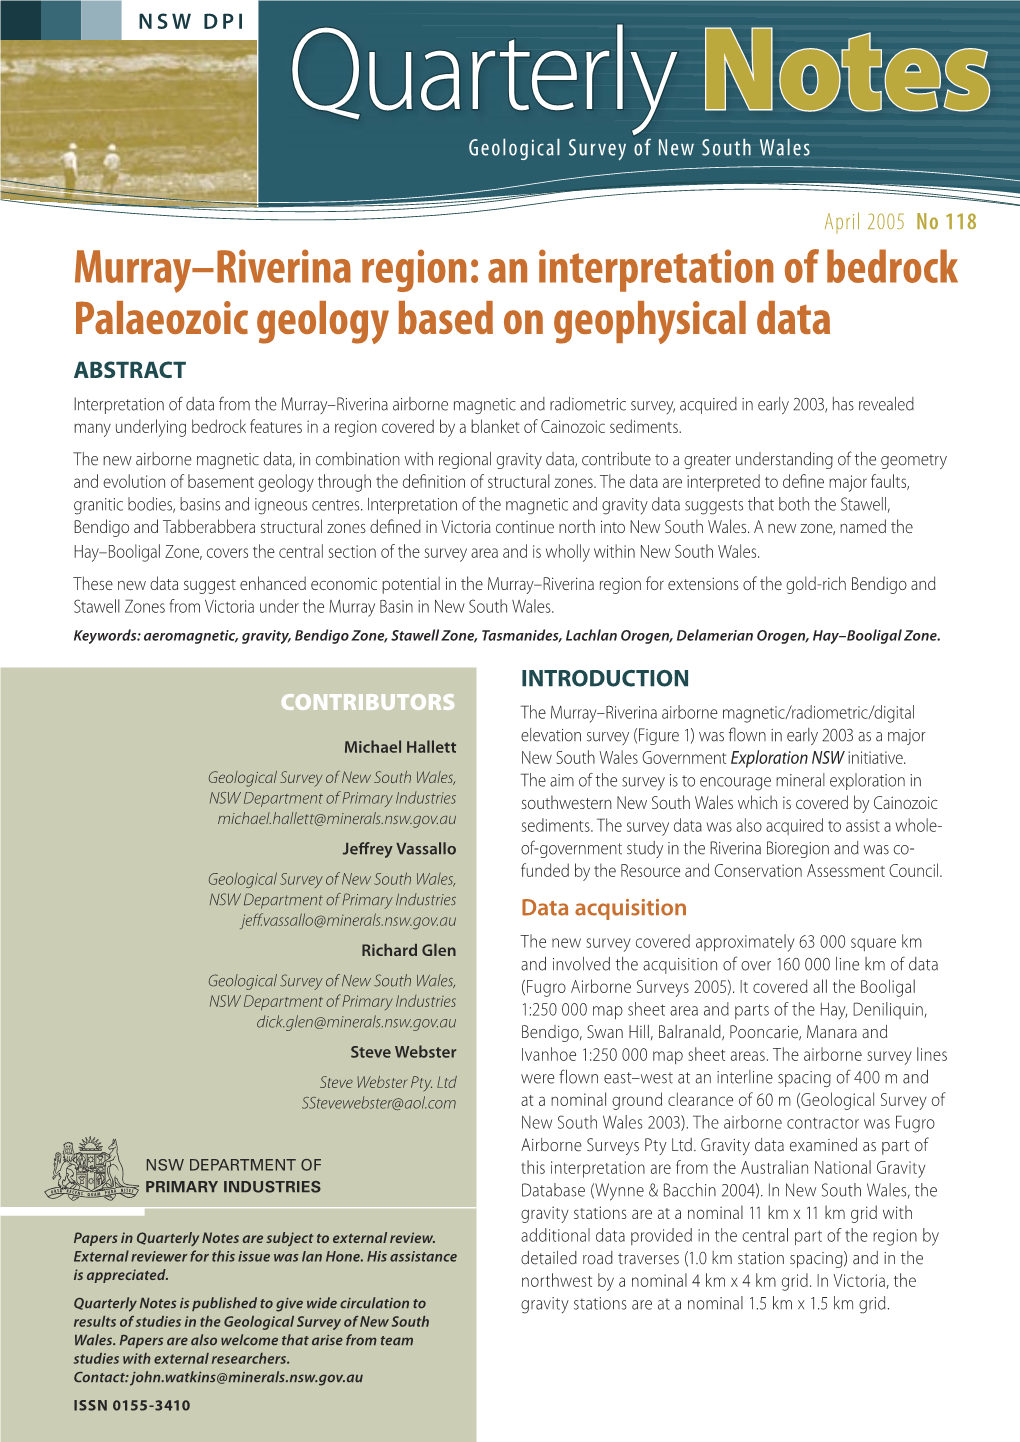 April 2005. Murray-Riverina Region: an Interpretation of Bedrock